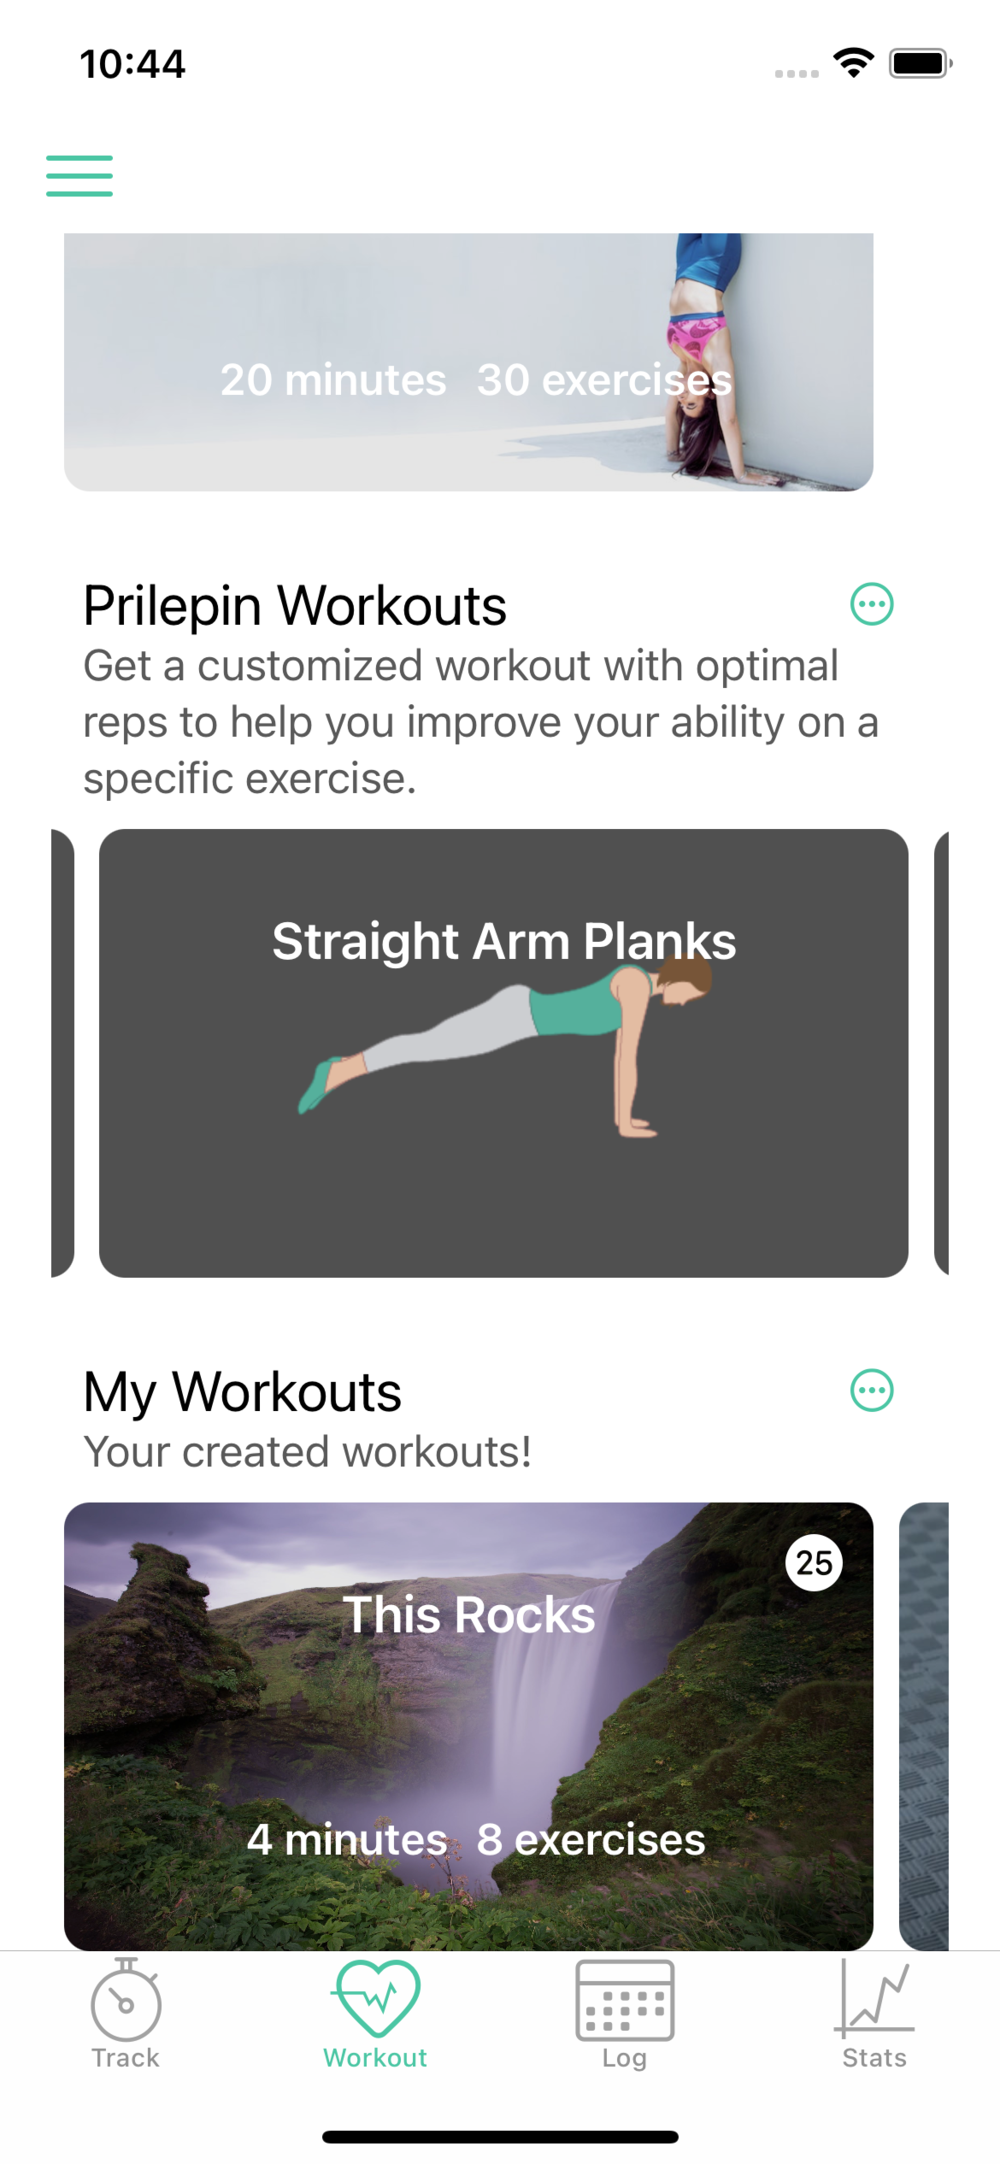 Prilepin Workouts